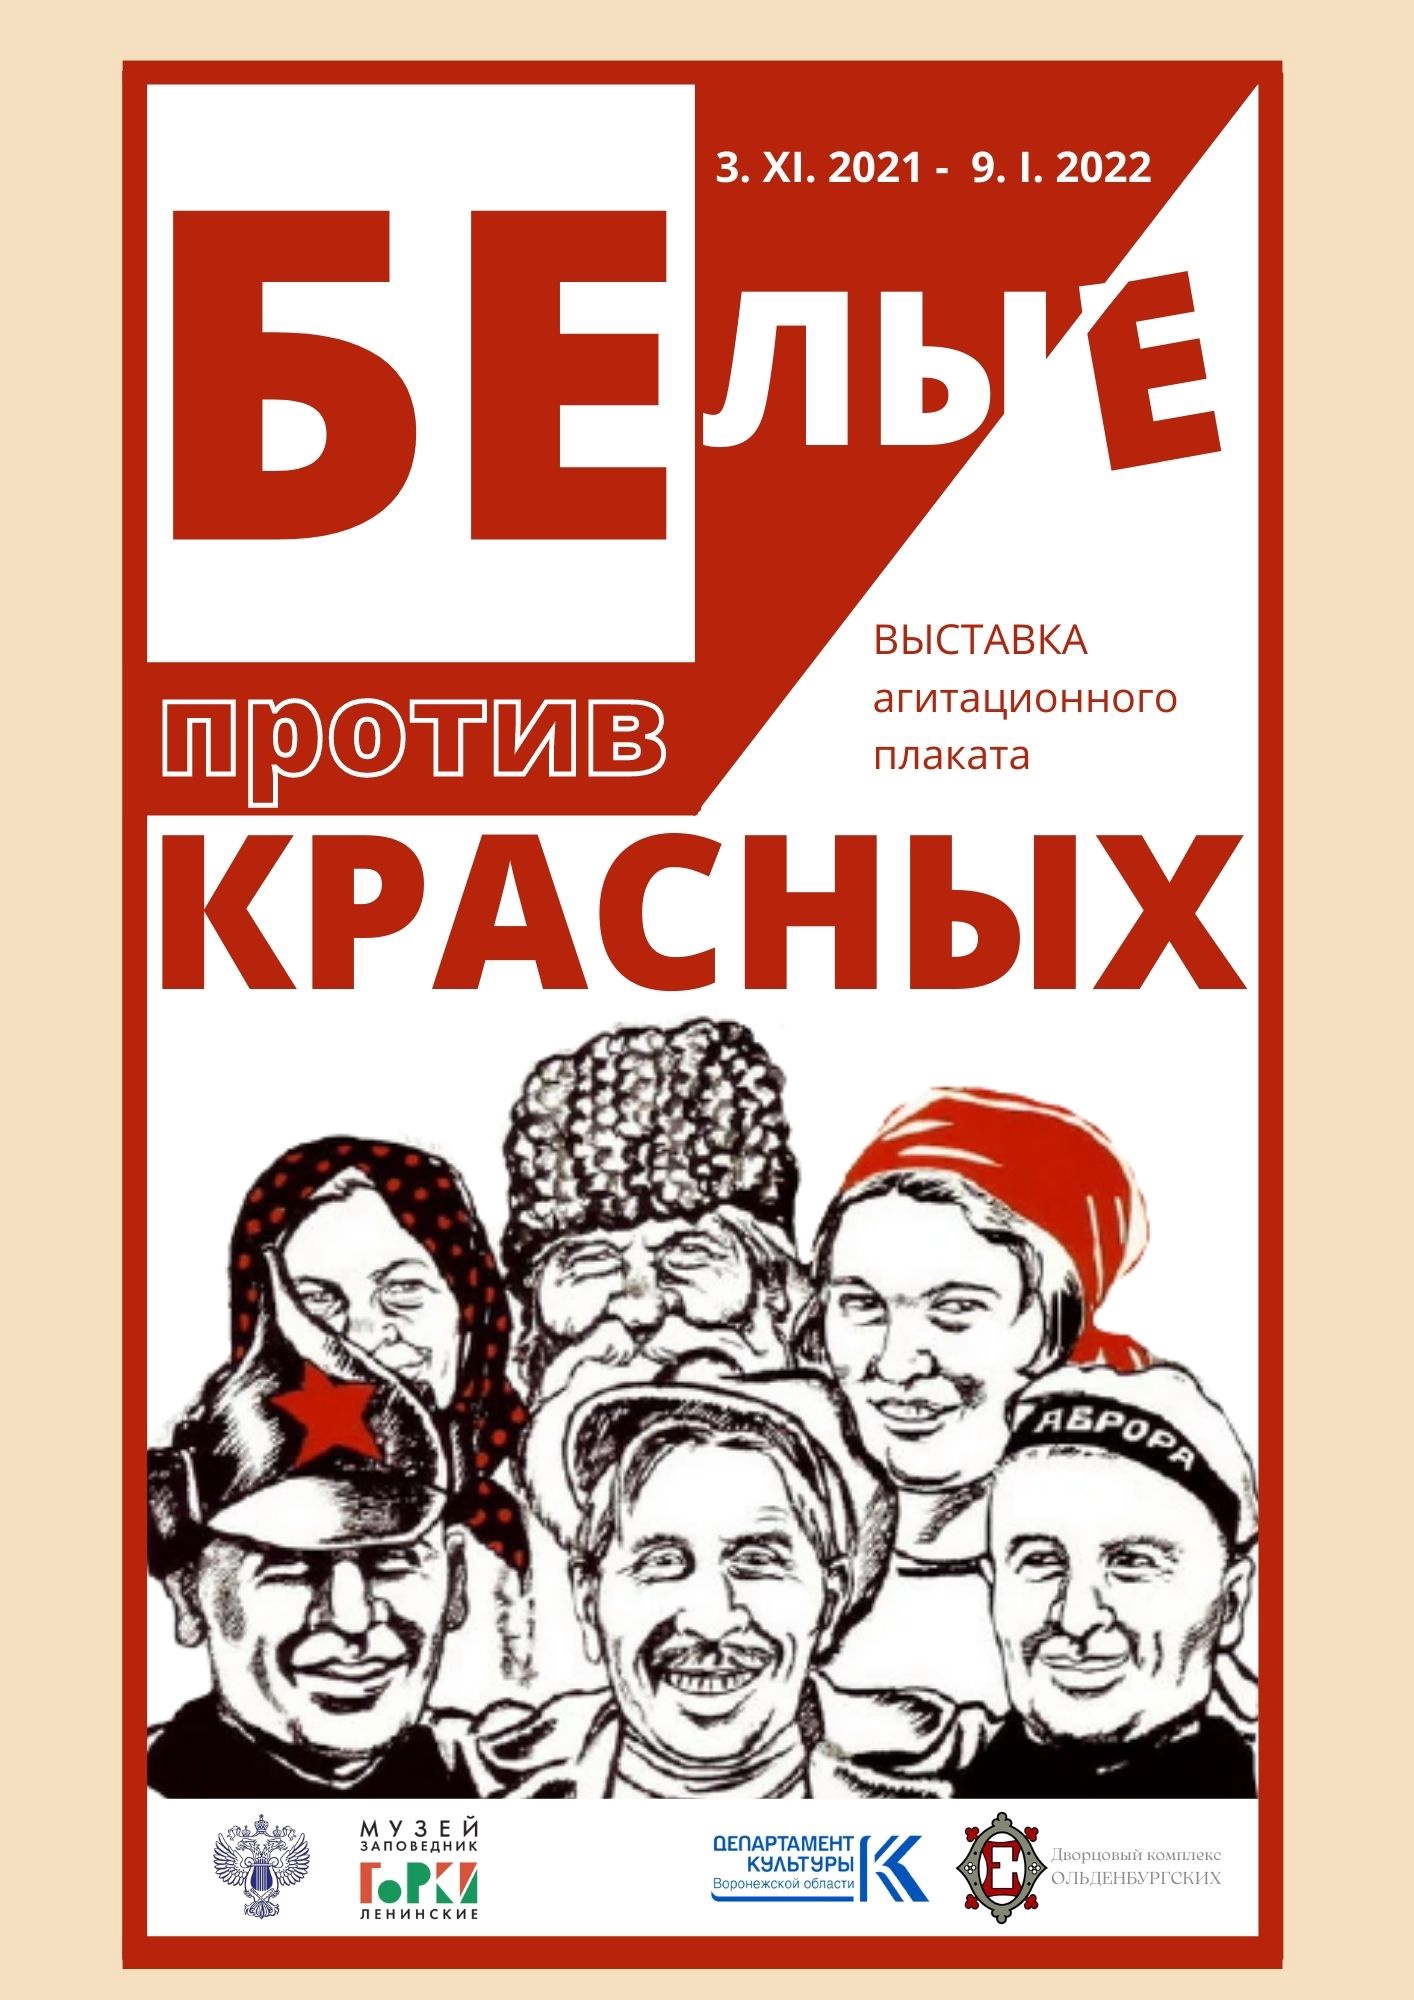 Выставка агитационного плаката «Белые против Красных»